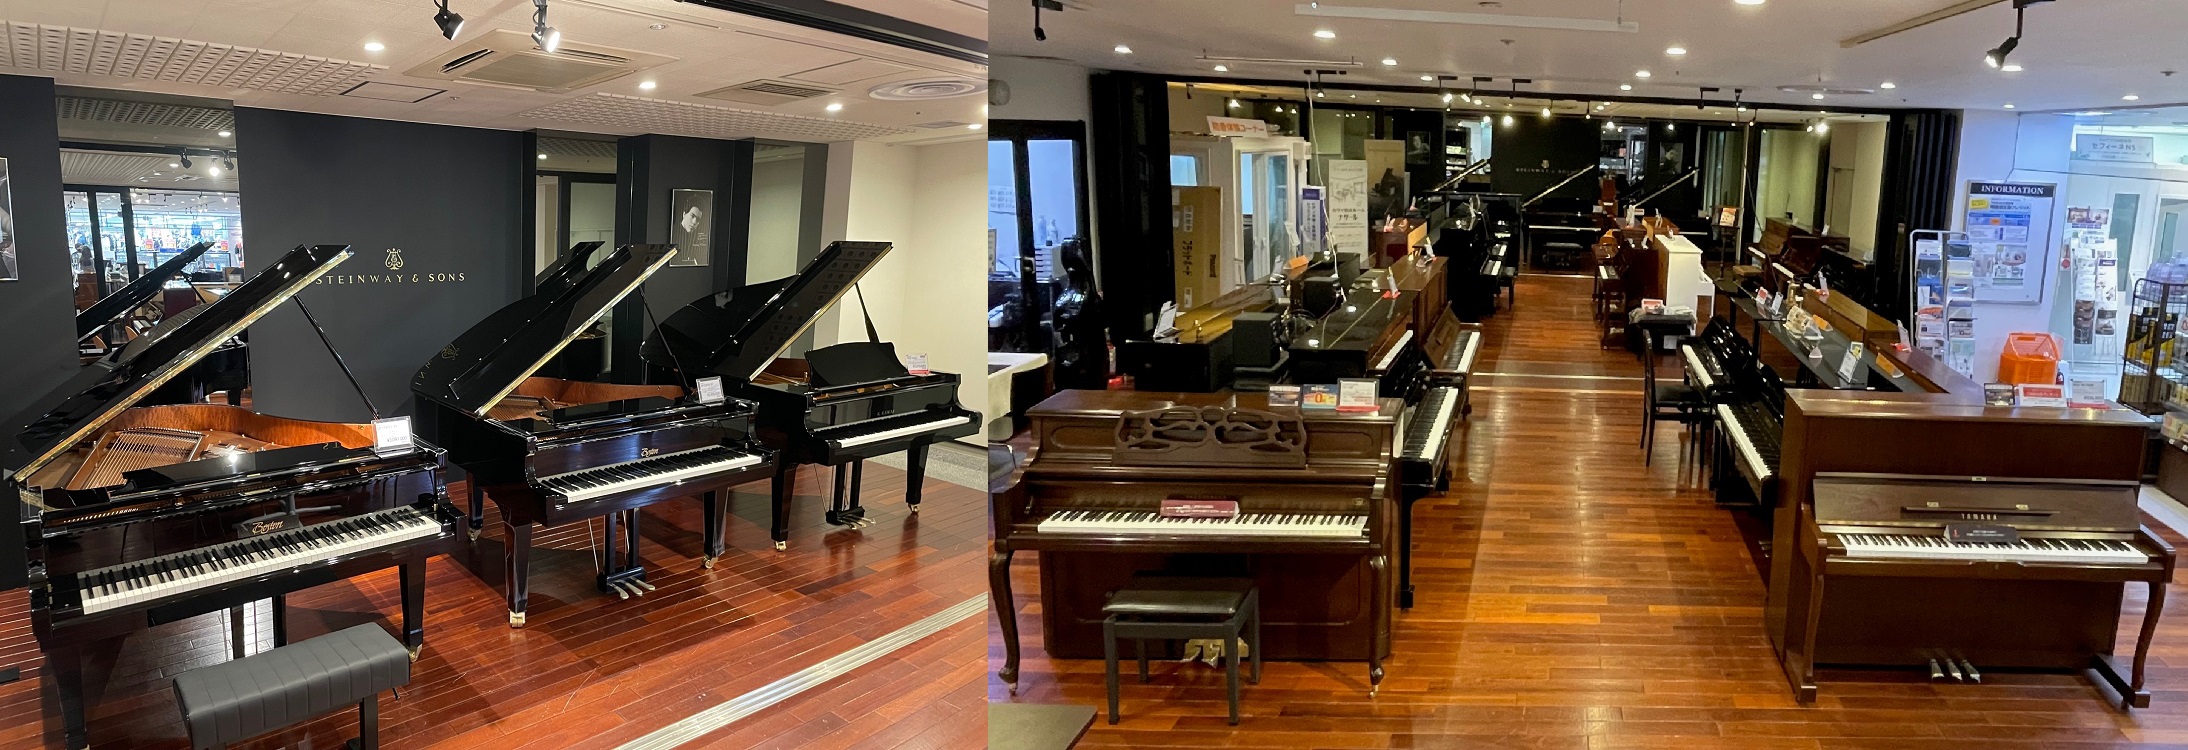 川崎や横浜、大田区でピアノをお探しの方はぜひ川崎ルフロン店へ！ 島村楽器川崎ルフロン店では、電子ピアノ・アコースティックピアノ合わせて常時40台以上展示しており、1台限りのお買い得品や、最新機種、スタイリッシュなコンパクトモデル、アコースティックピアノに近いハイグレードモデルなど多数ご用意しておりま […]